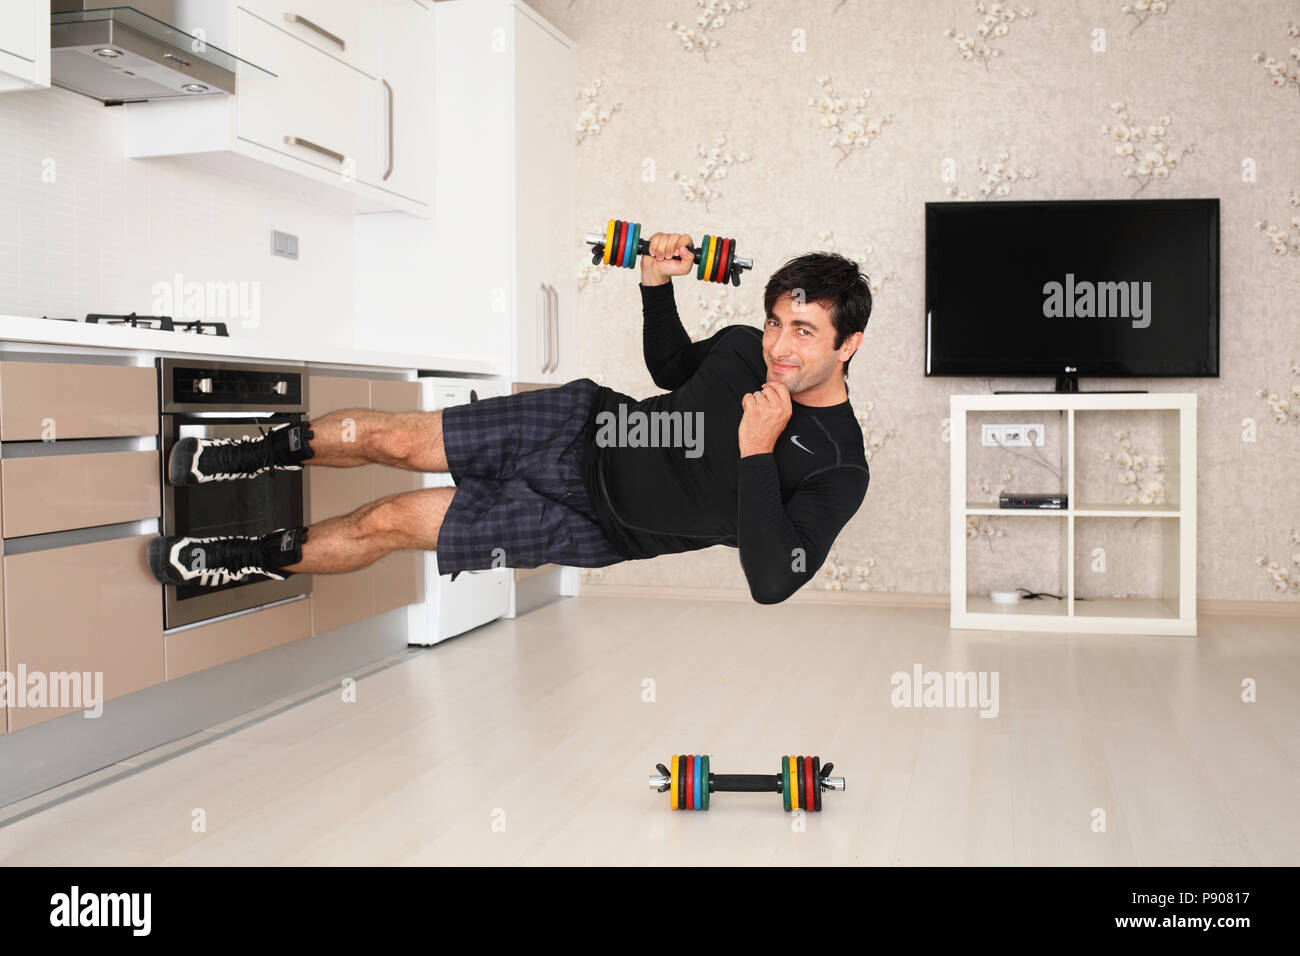 Funny fitness Foto eines Mannes zu Fuß auf den Wänden wie Spider Man Stockfoto